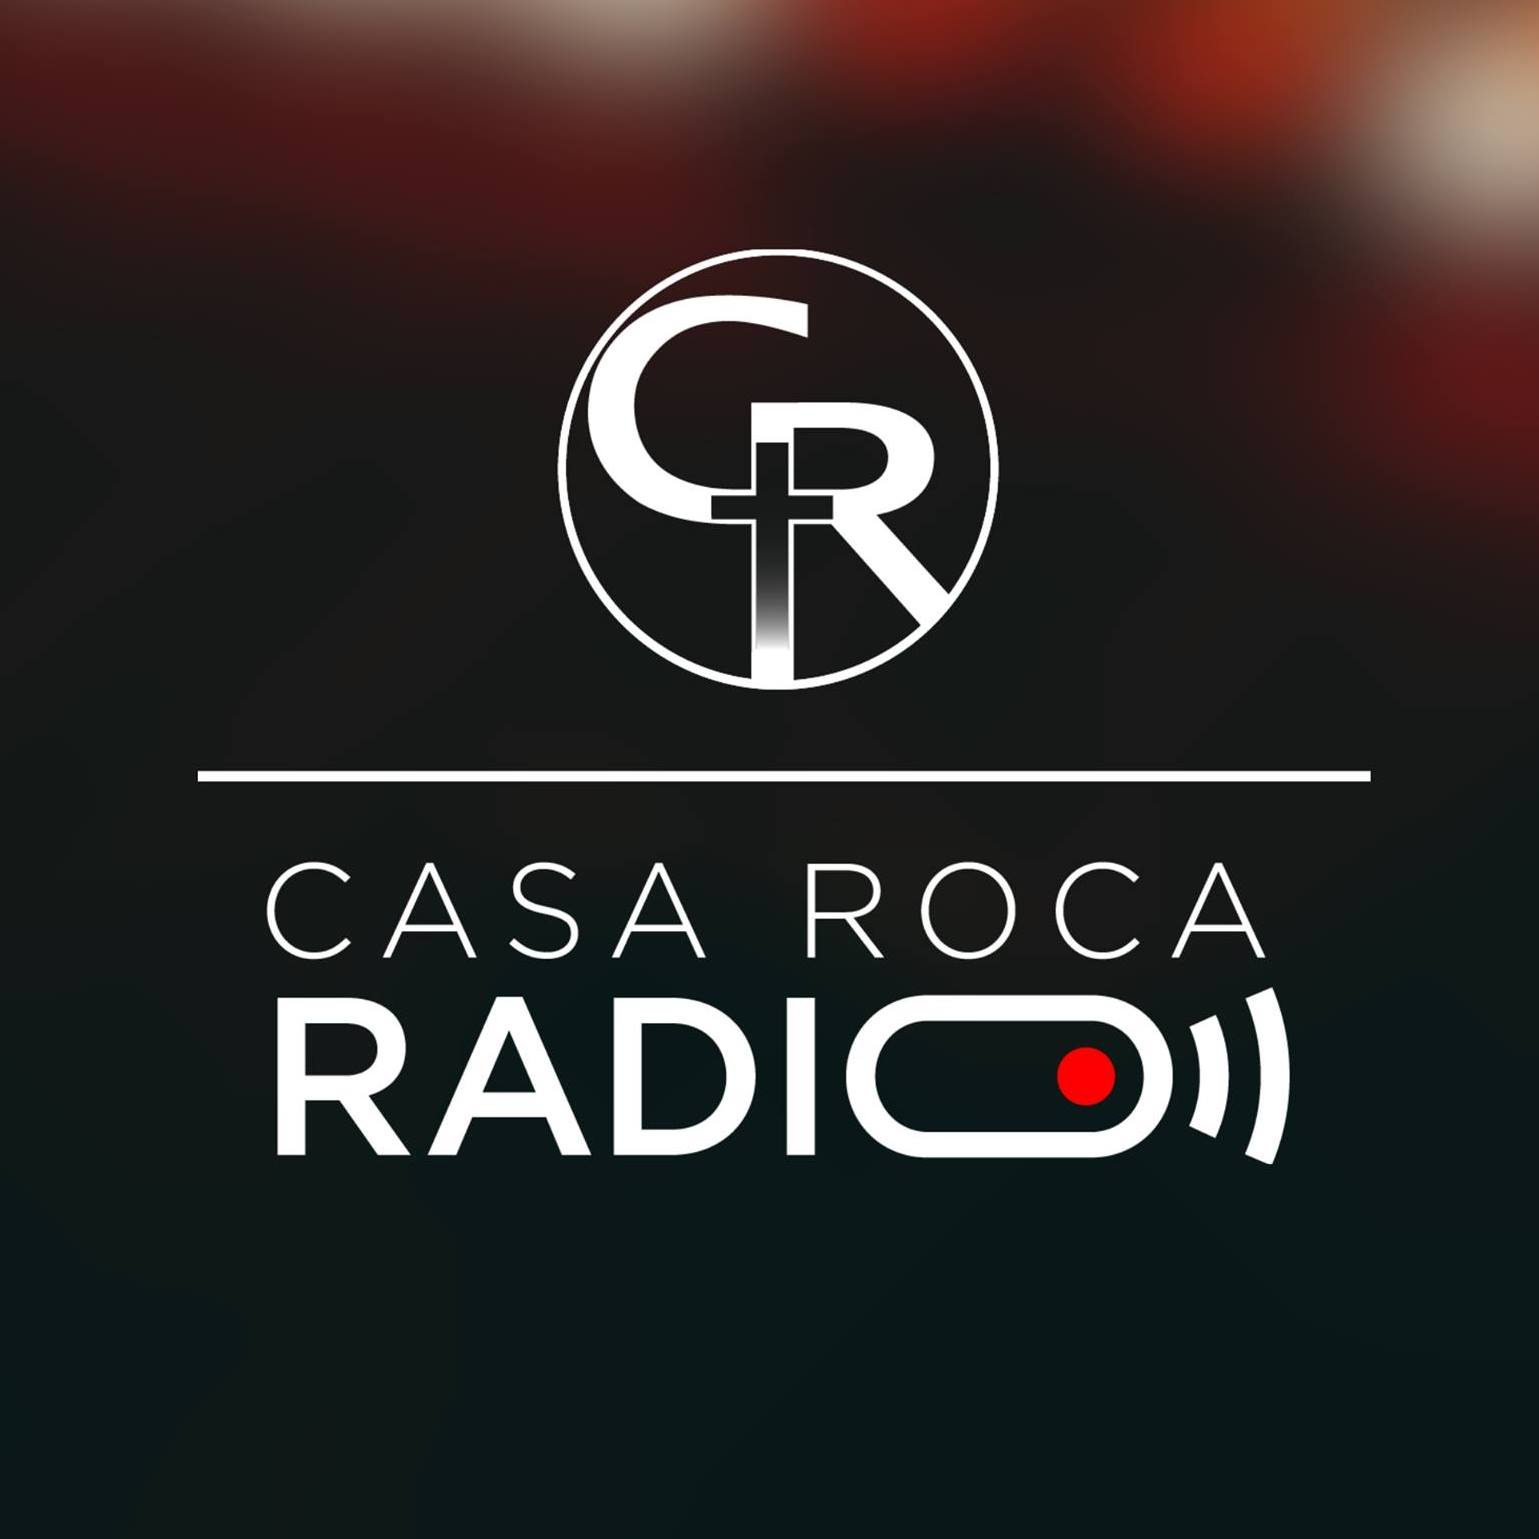 (c) Casarocaradio.com